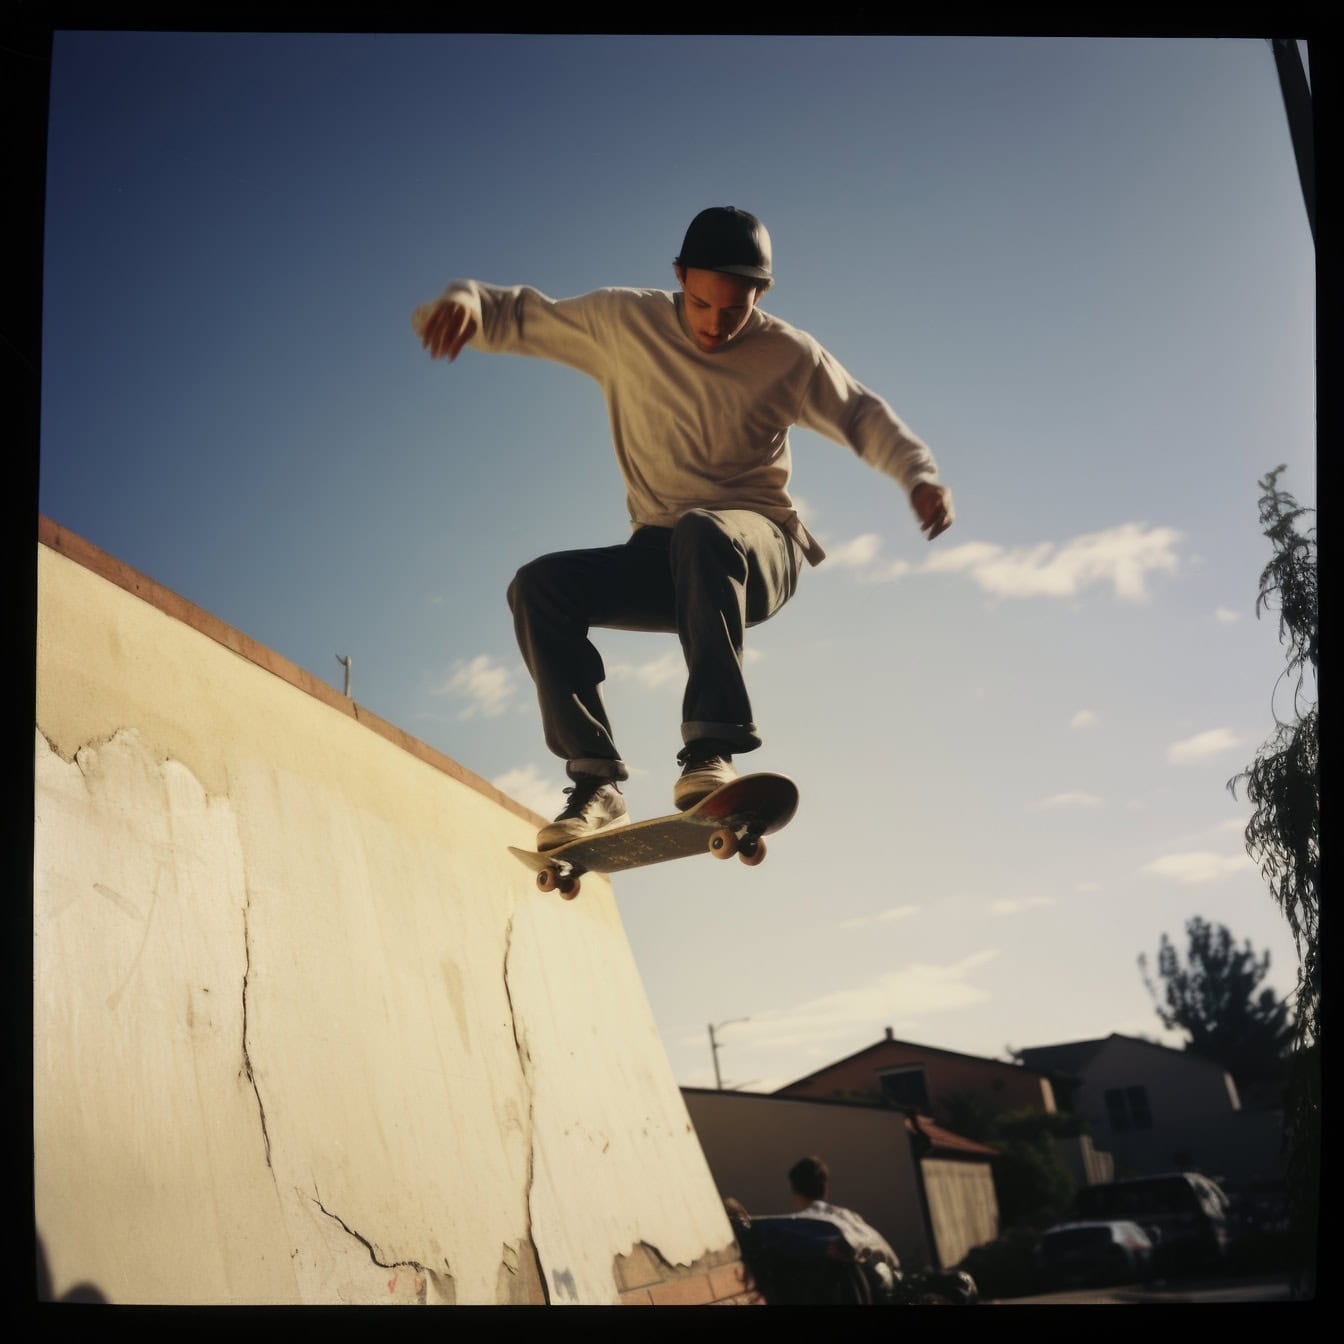 Altes Polaroid-Foto eines jungen Mannes, der wie ein Stuntman von einer Rampe auf einem Skateboard springt